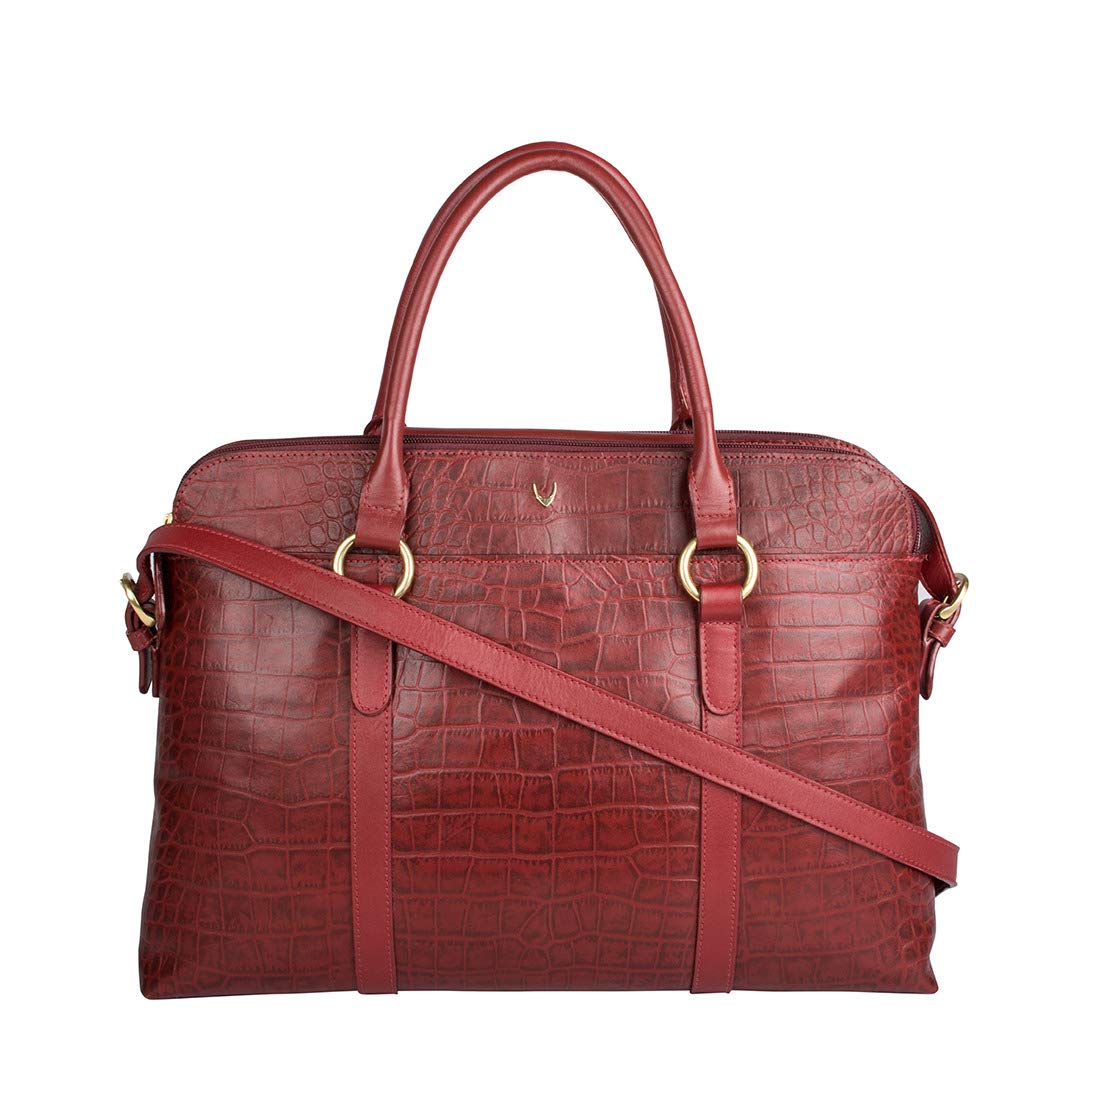 Hidesign Women's Shoulder Bag (Red)